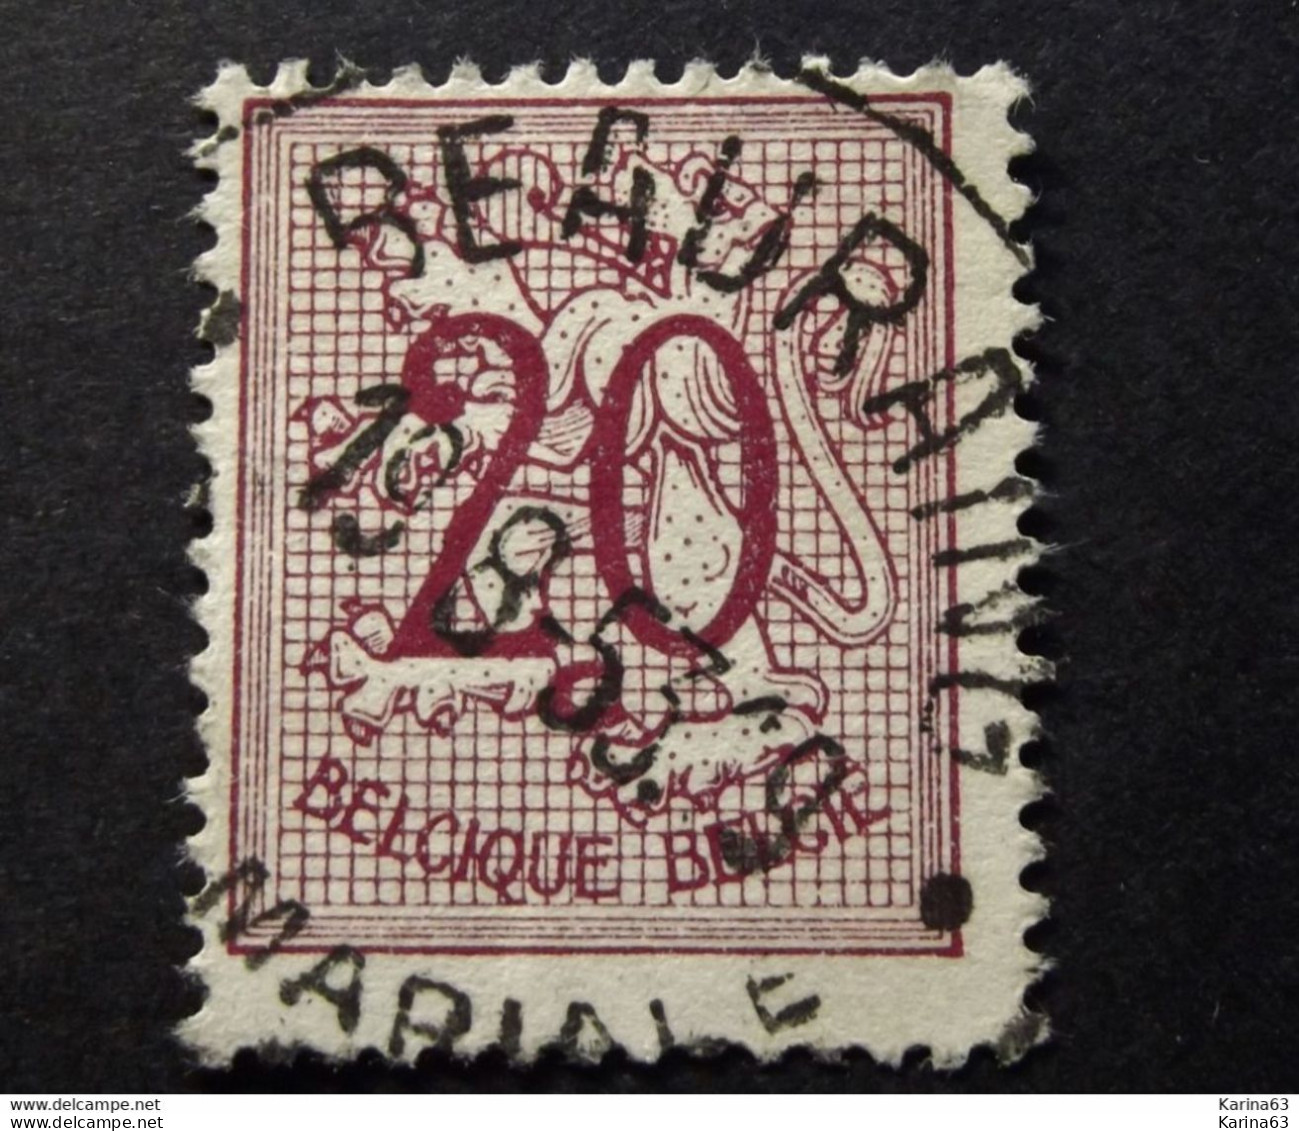 Belgie Belgique - 1951 - OPB/COB N° 851 - (  1 Value ) -  Cijfer Op Heraldieke Leeuw  Obl. Beauraing  1953 - Gebruikt